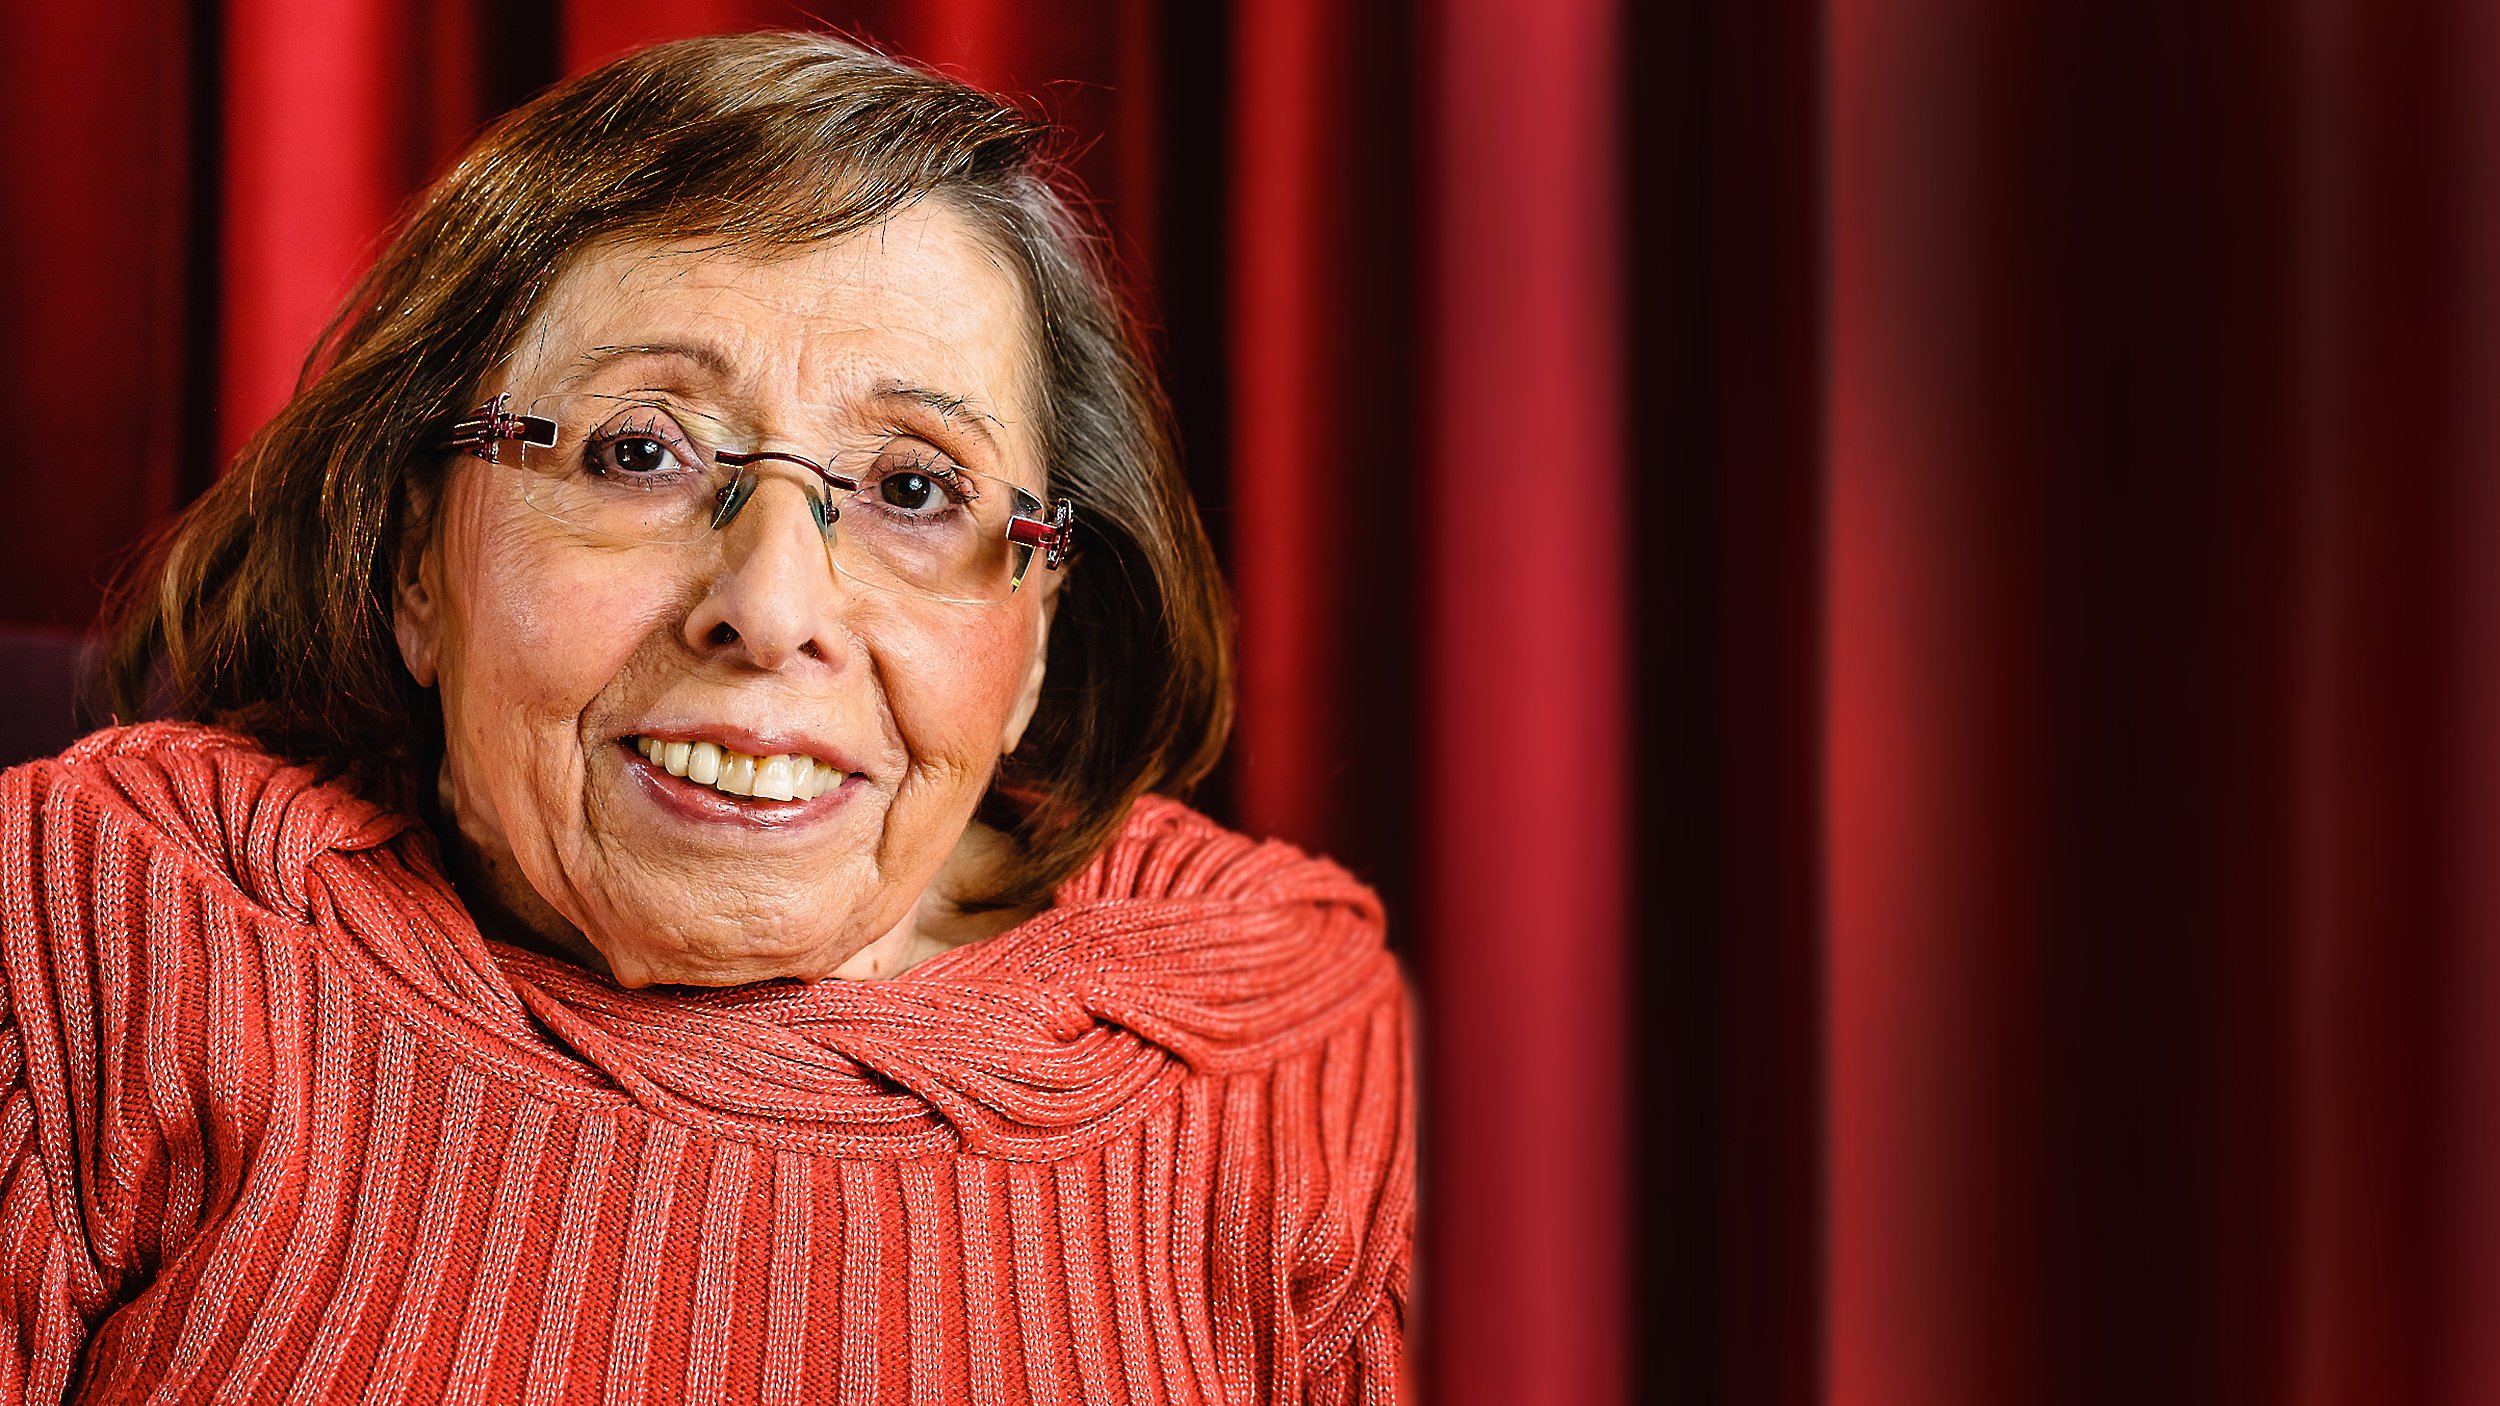 Foto: Portrait von Ingrid Koch, lachend vor einem roten Vorhang